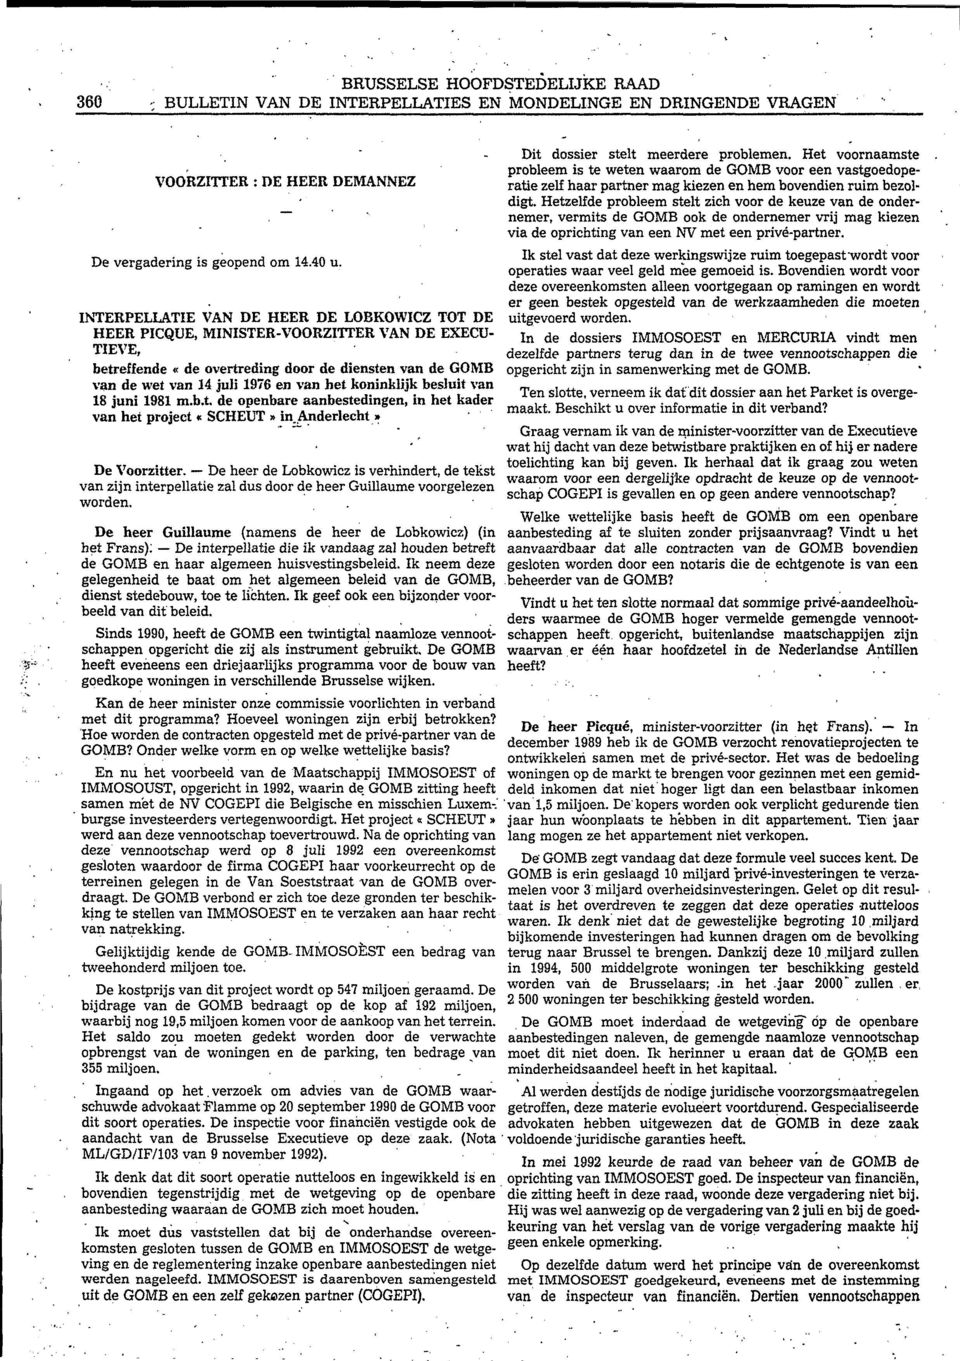 koninklijk besluit van 18 juni 1981 m.b.t, de openbare aanbestedingen, in het kader van het project «SCHEUT» in.anderiecht» De Voorzitter.